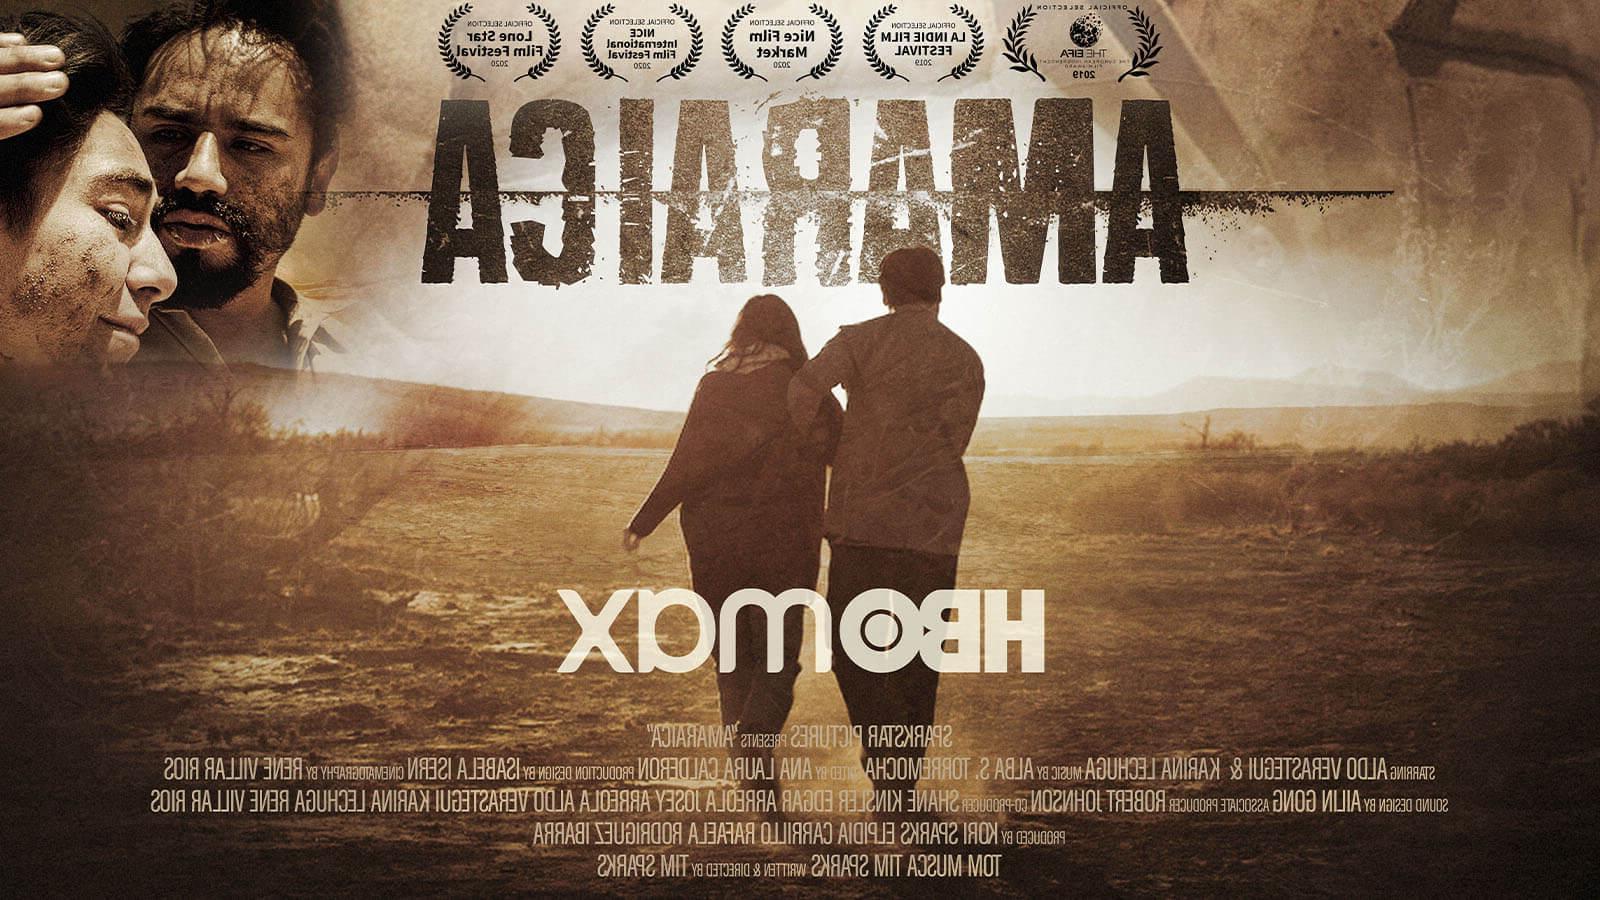 《阿玛拉卡》的电影海报. 一男一女背对着镜头走过一片荒芜的田野.